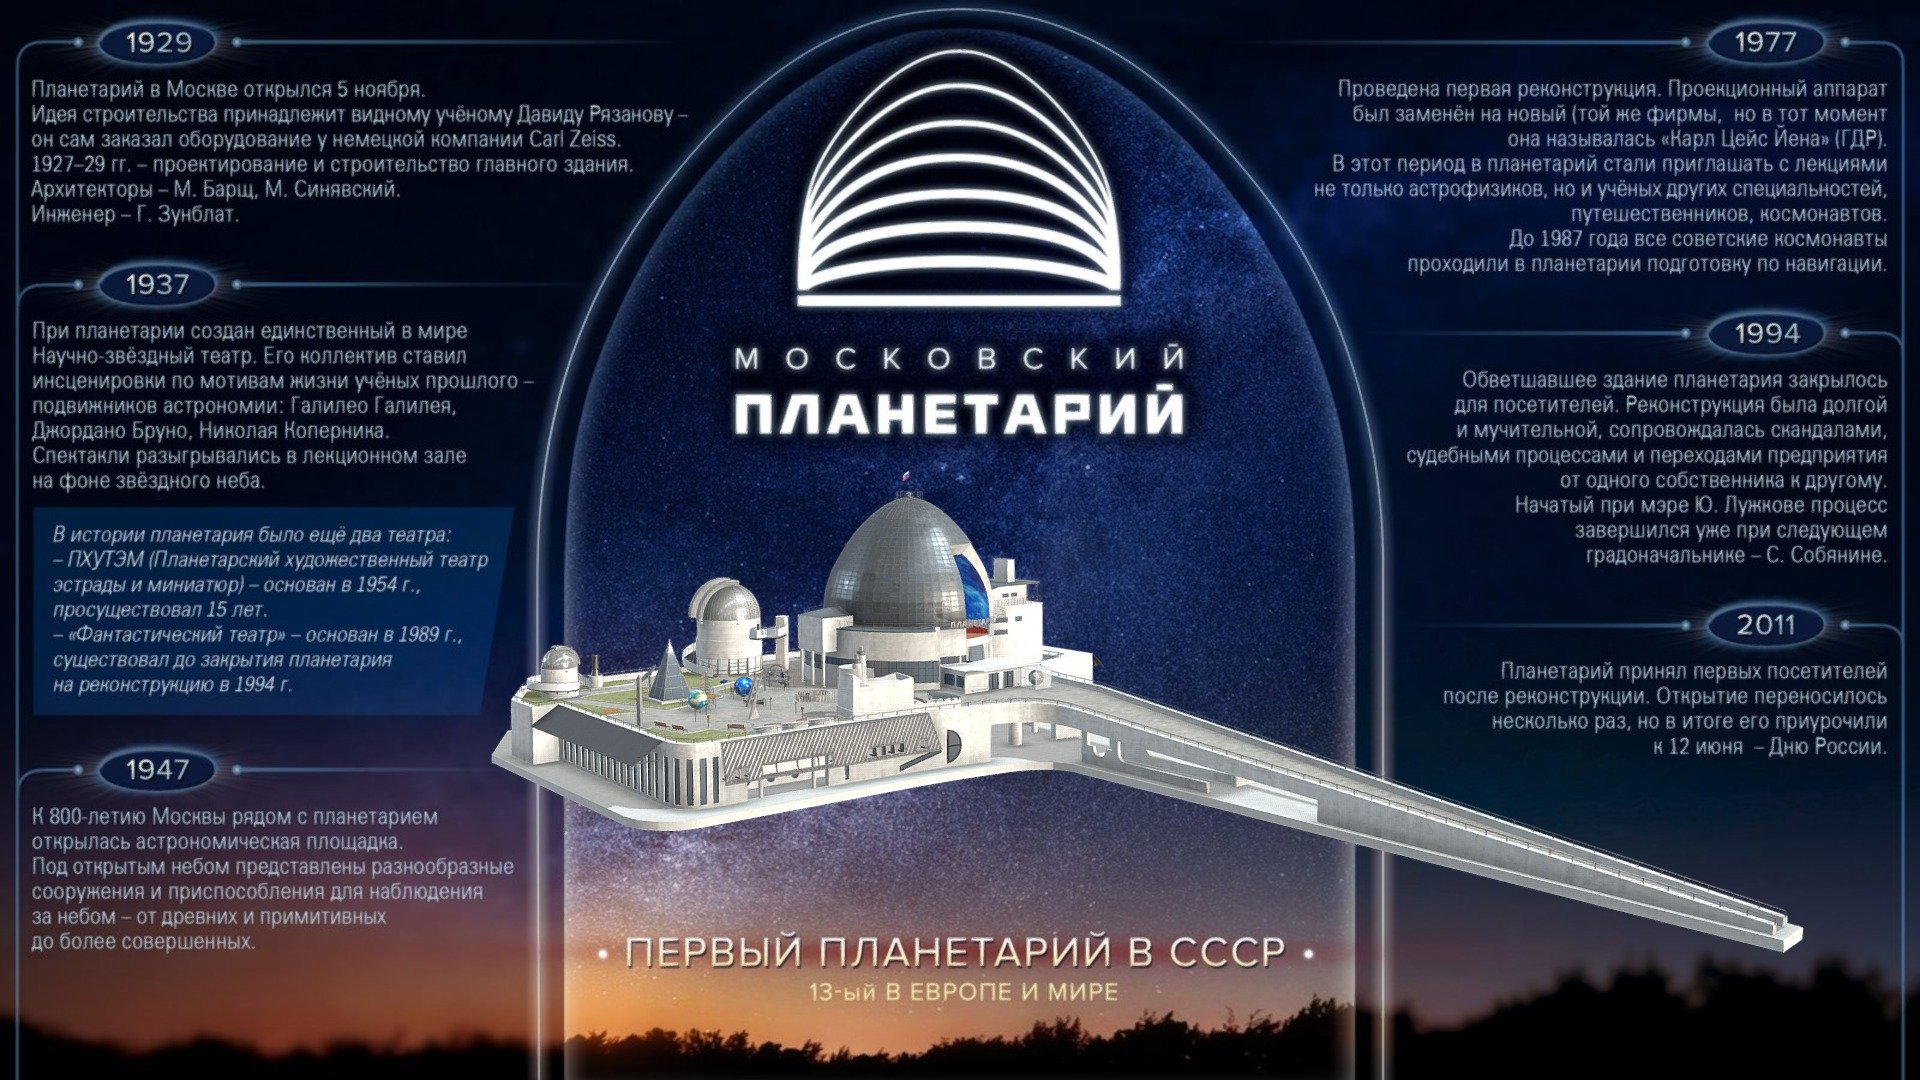 Московский планетарий – популярное место развлечений для взрослых и детей - Метрорус